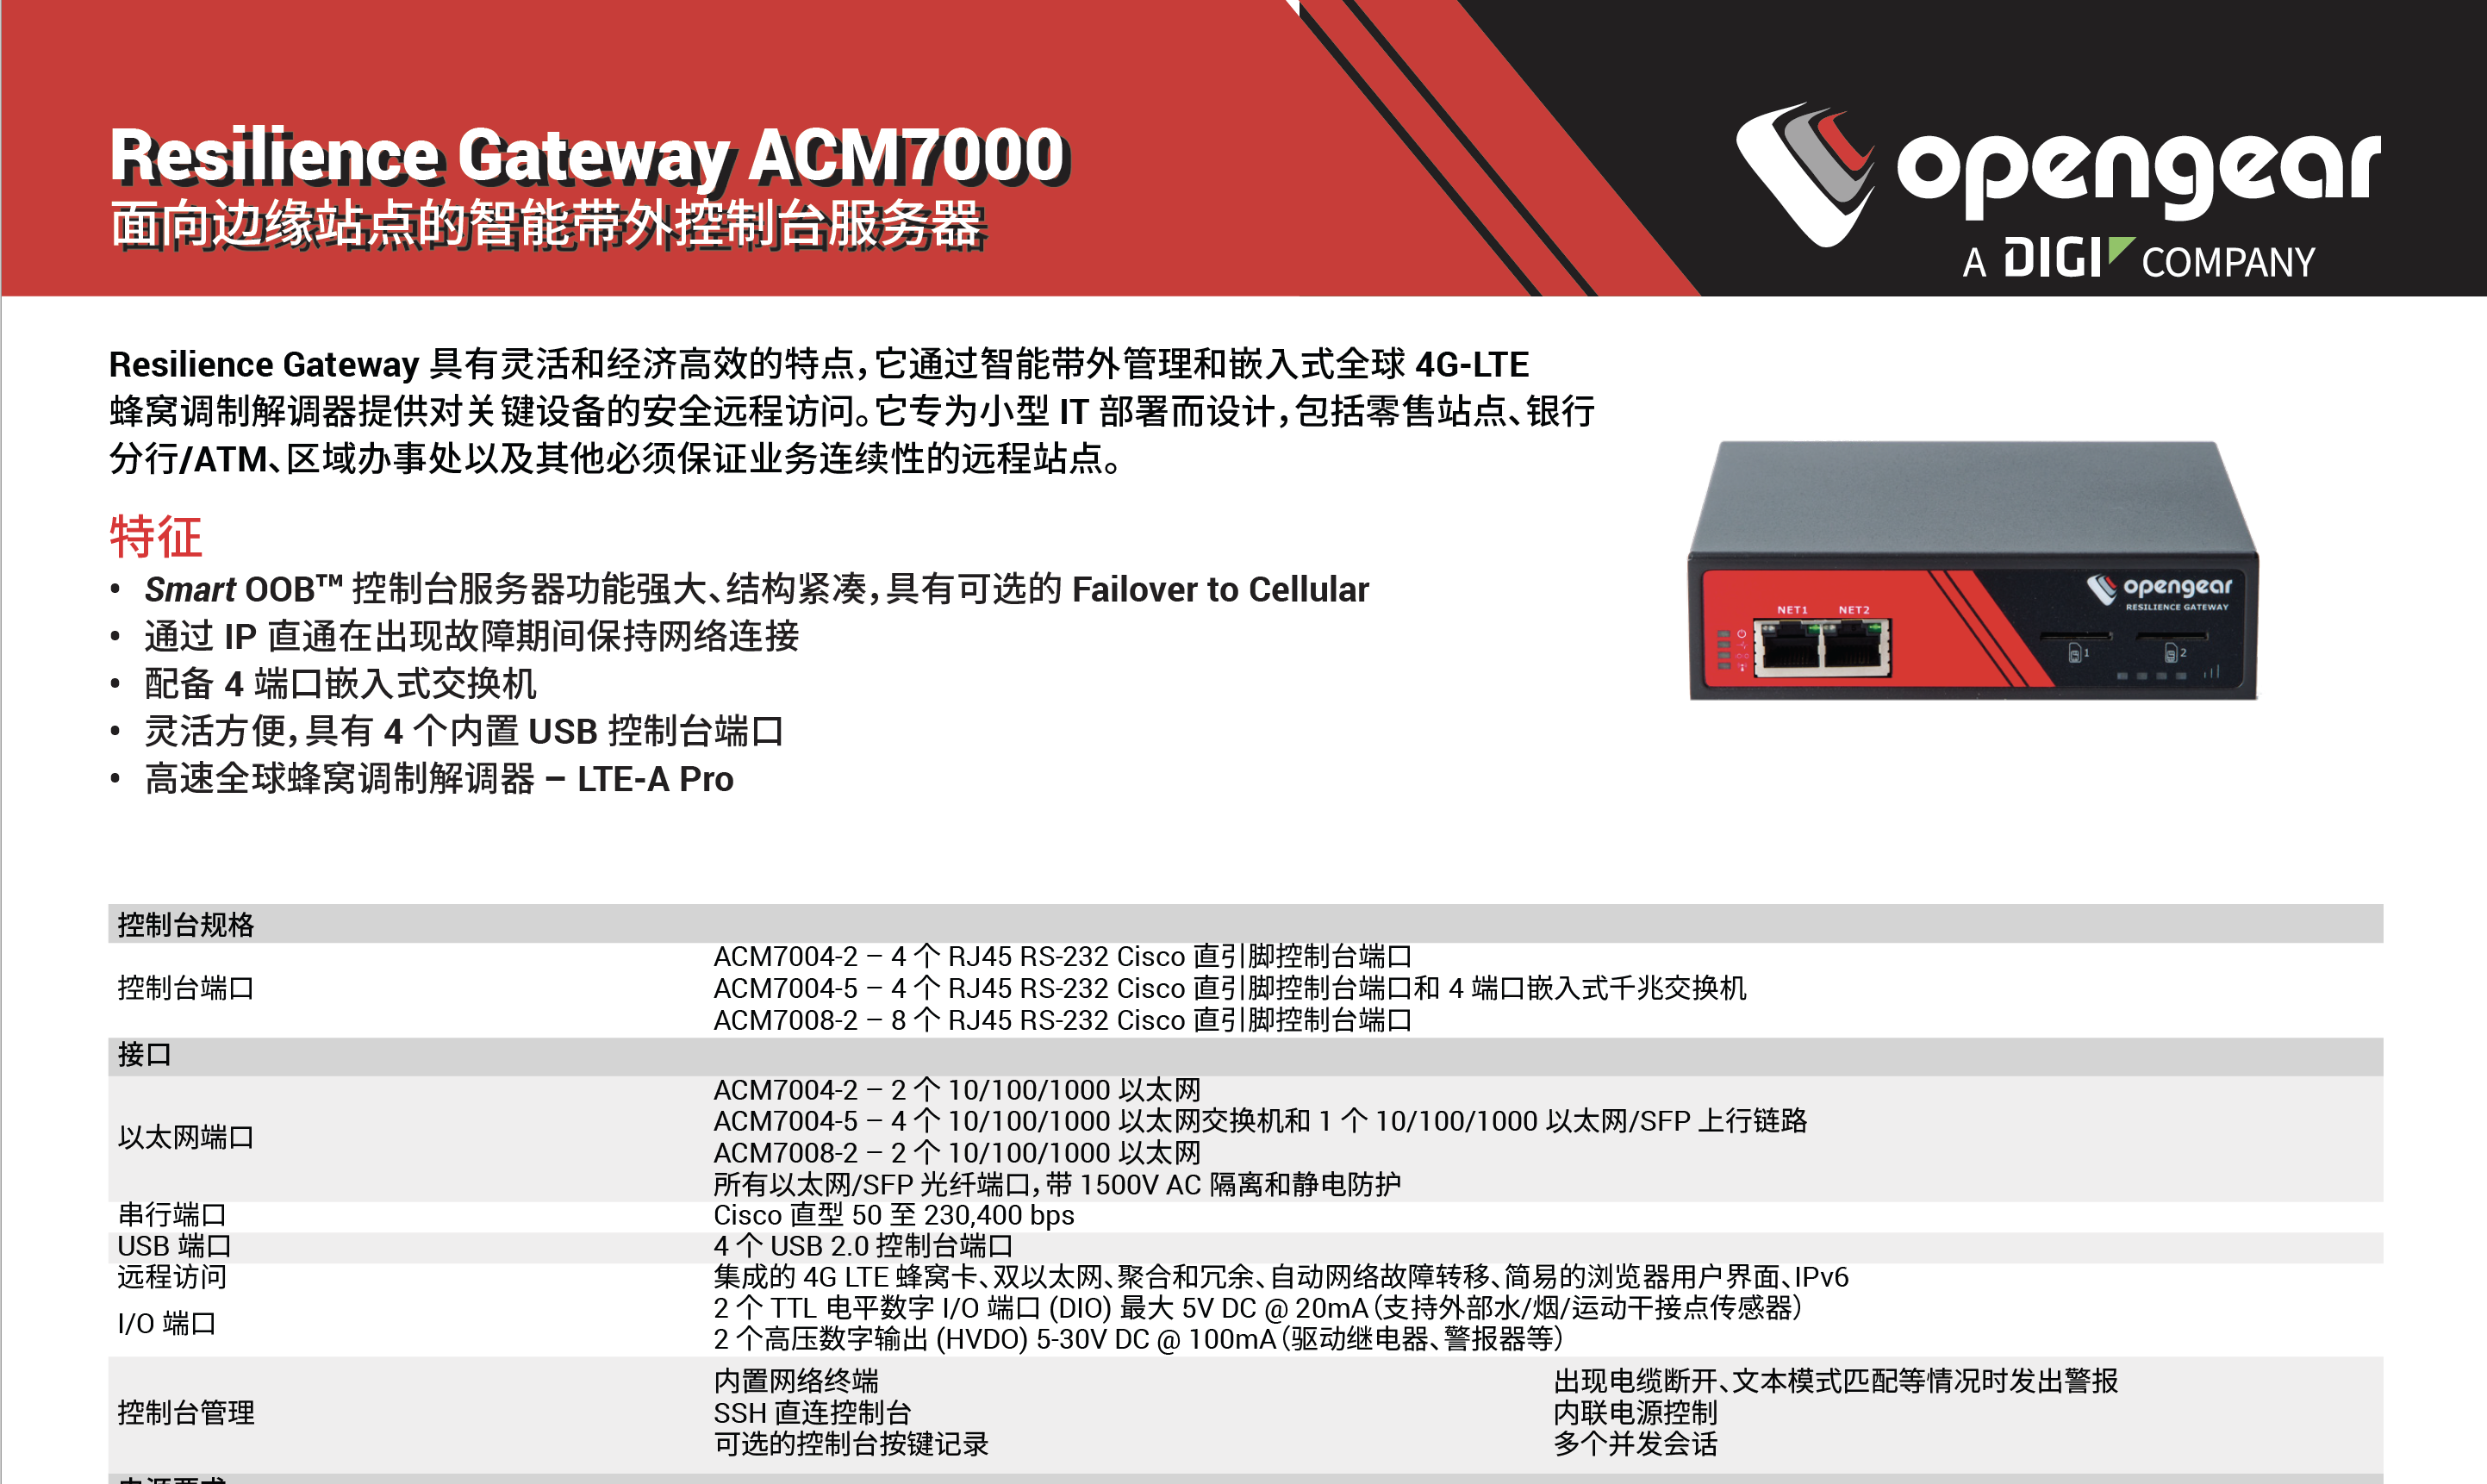 Opengear ACM7004-2、Opengear ACM7004-2-L、Opengear ACM7004-2-LMP、Opengear ACM7004-2-M、Opengear ACM7004-5、Opengear ACM7004-5-L、Opengear ACM7004-5-LMP、Opengear ACM7008-2、Opengear ACM7008-2-L、Opengear ACM7008-2-LMP、Opengear ACM7008-2-M、Opengear IM7208-2-DAC-CN、Opengear IM7216-2-DAC-CN、Opengear IM7232-2-DAC-CN、Opengear IM7248-2-DAC-CN、Opengear CM7116-2-DAC-CN、Opengear CM7116-2-SAC-CN、Opengear CM7132-2-DAC-CN、Opengear CM7148-2-DAC-CN